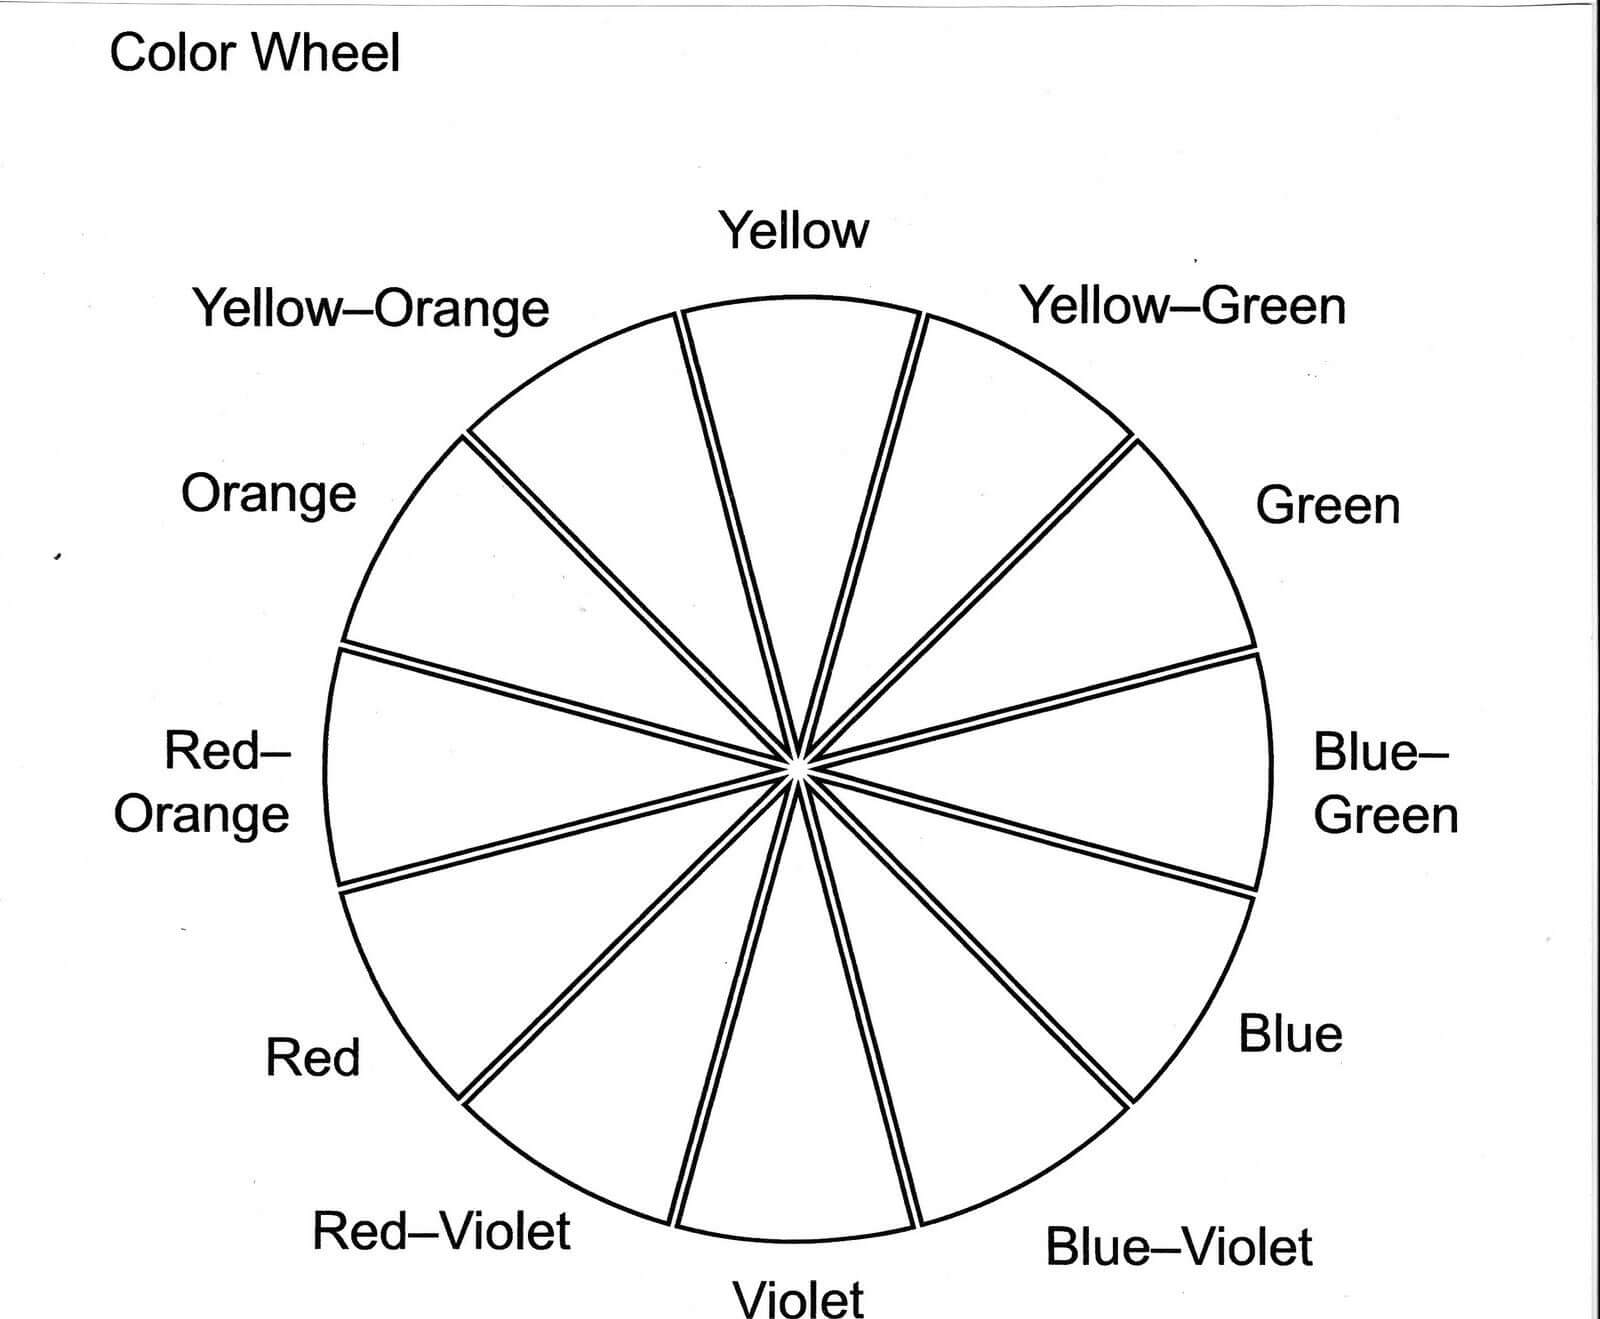 Color Wheel Worksheet Printable | Life Skills In 2019 Inside Blank Color Wheel Template